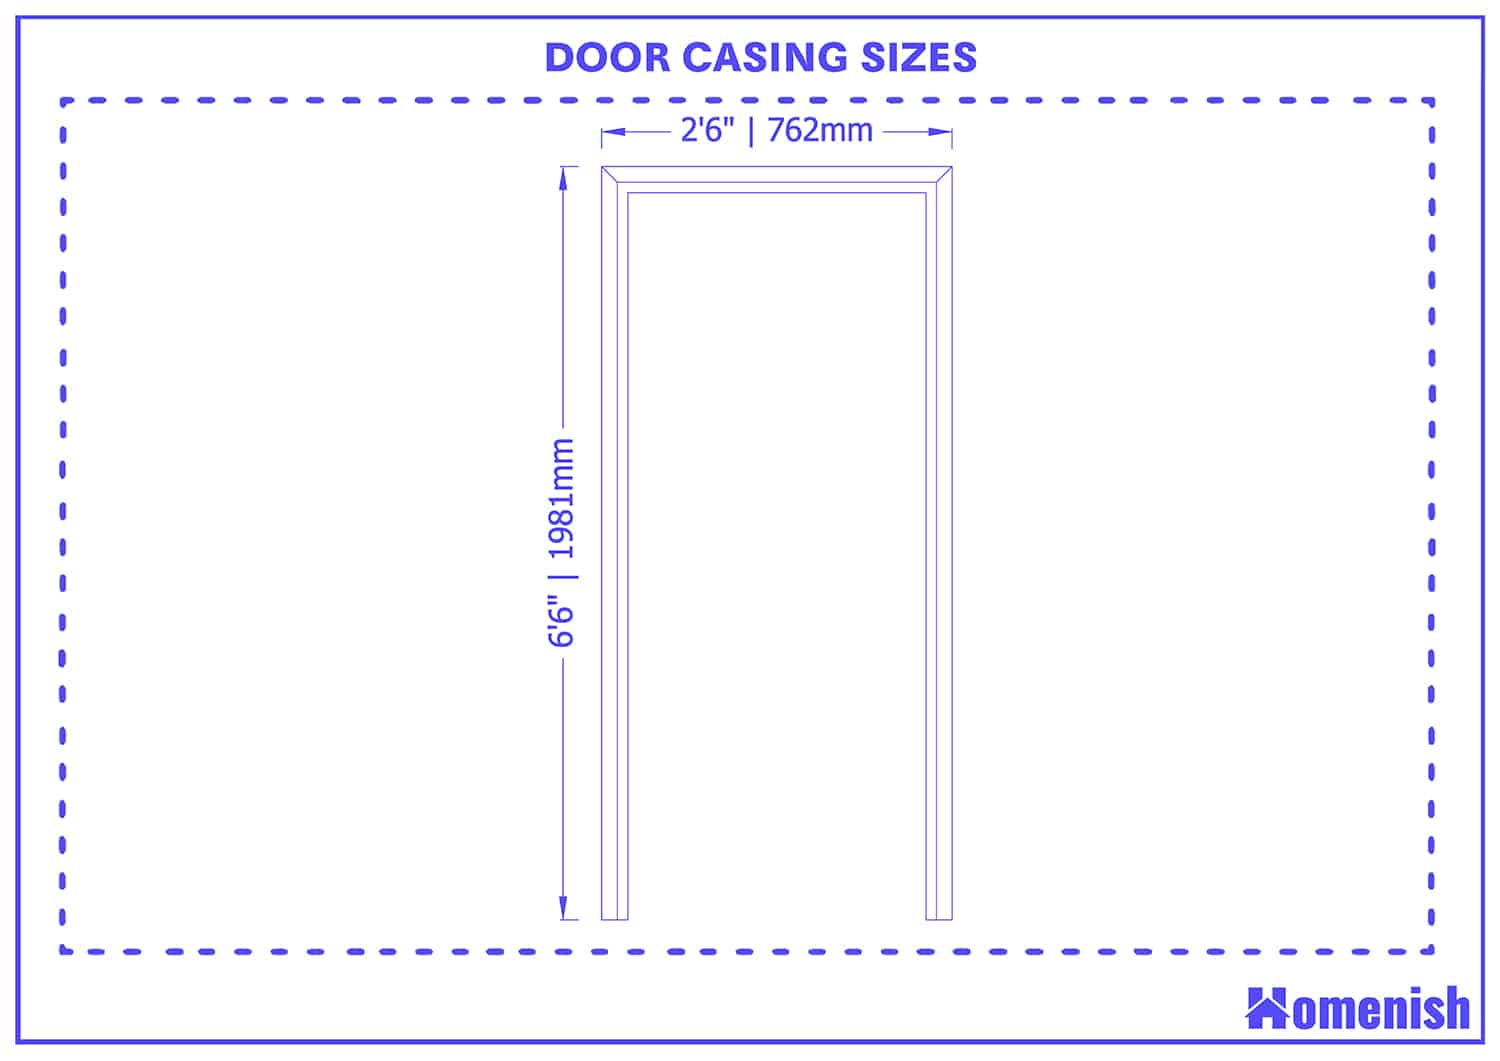 Door casing sizes